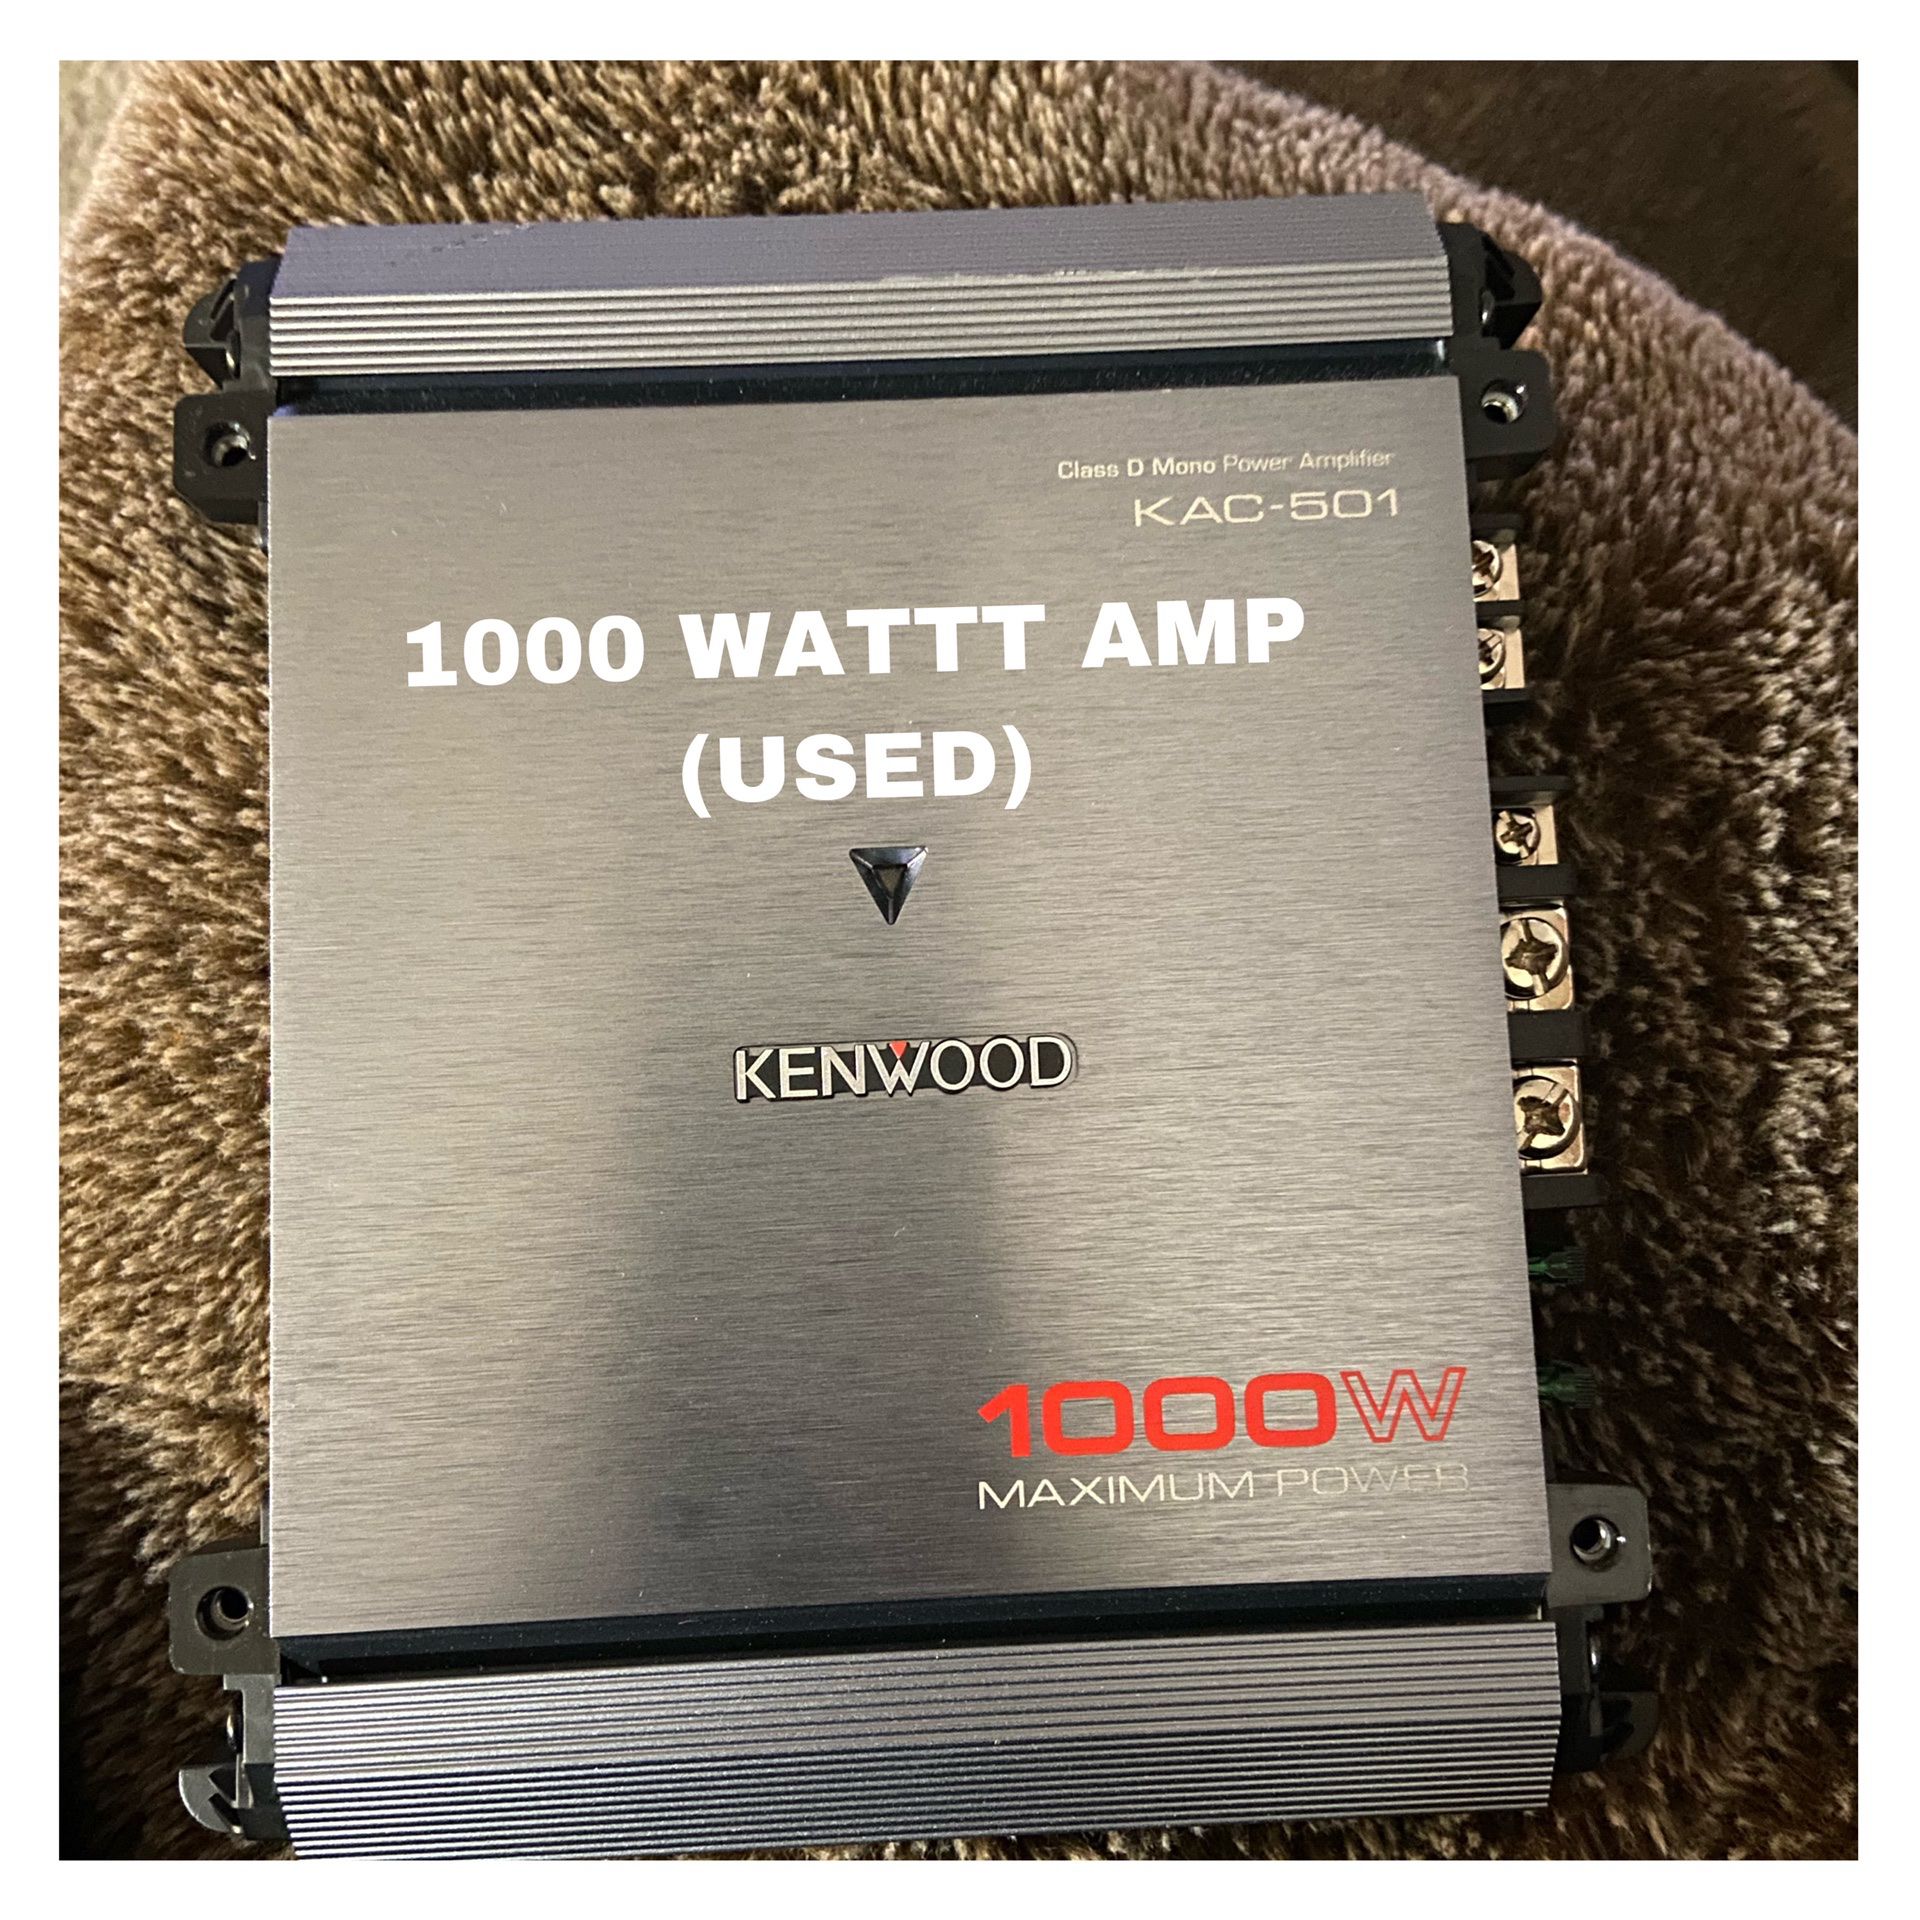 1000 WATT AMP